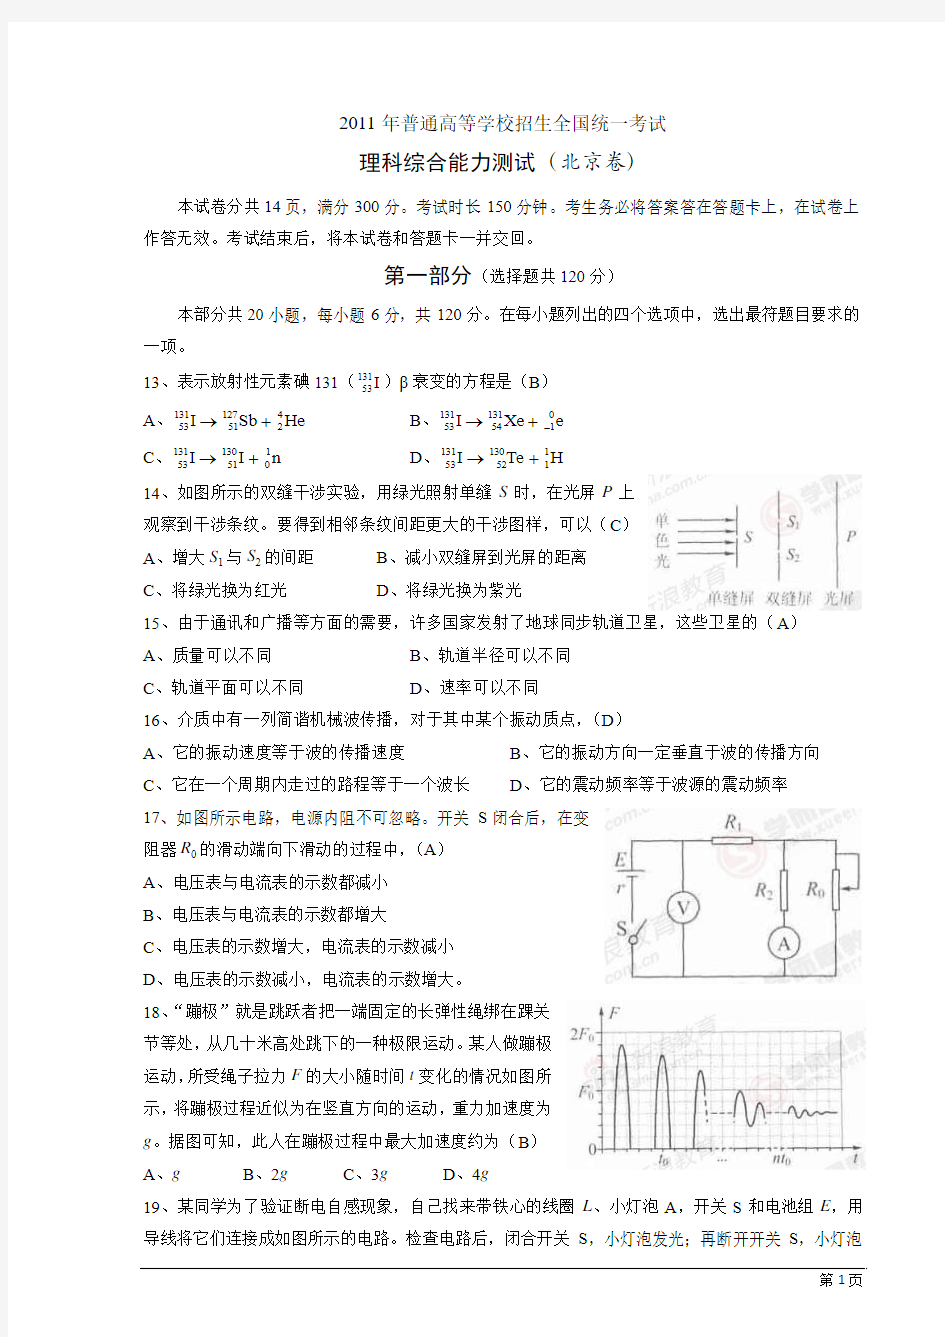 2011高考北京卷(物理部分)